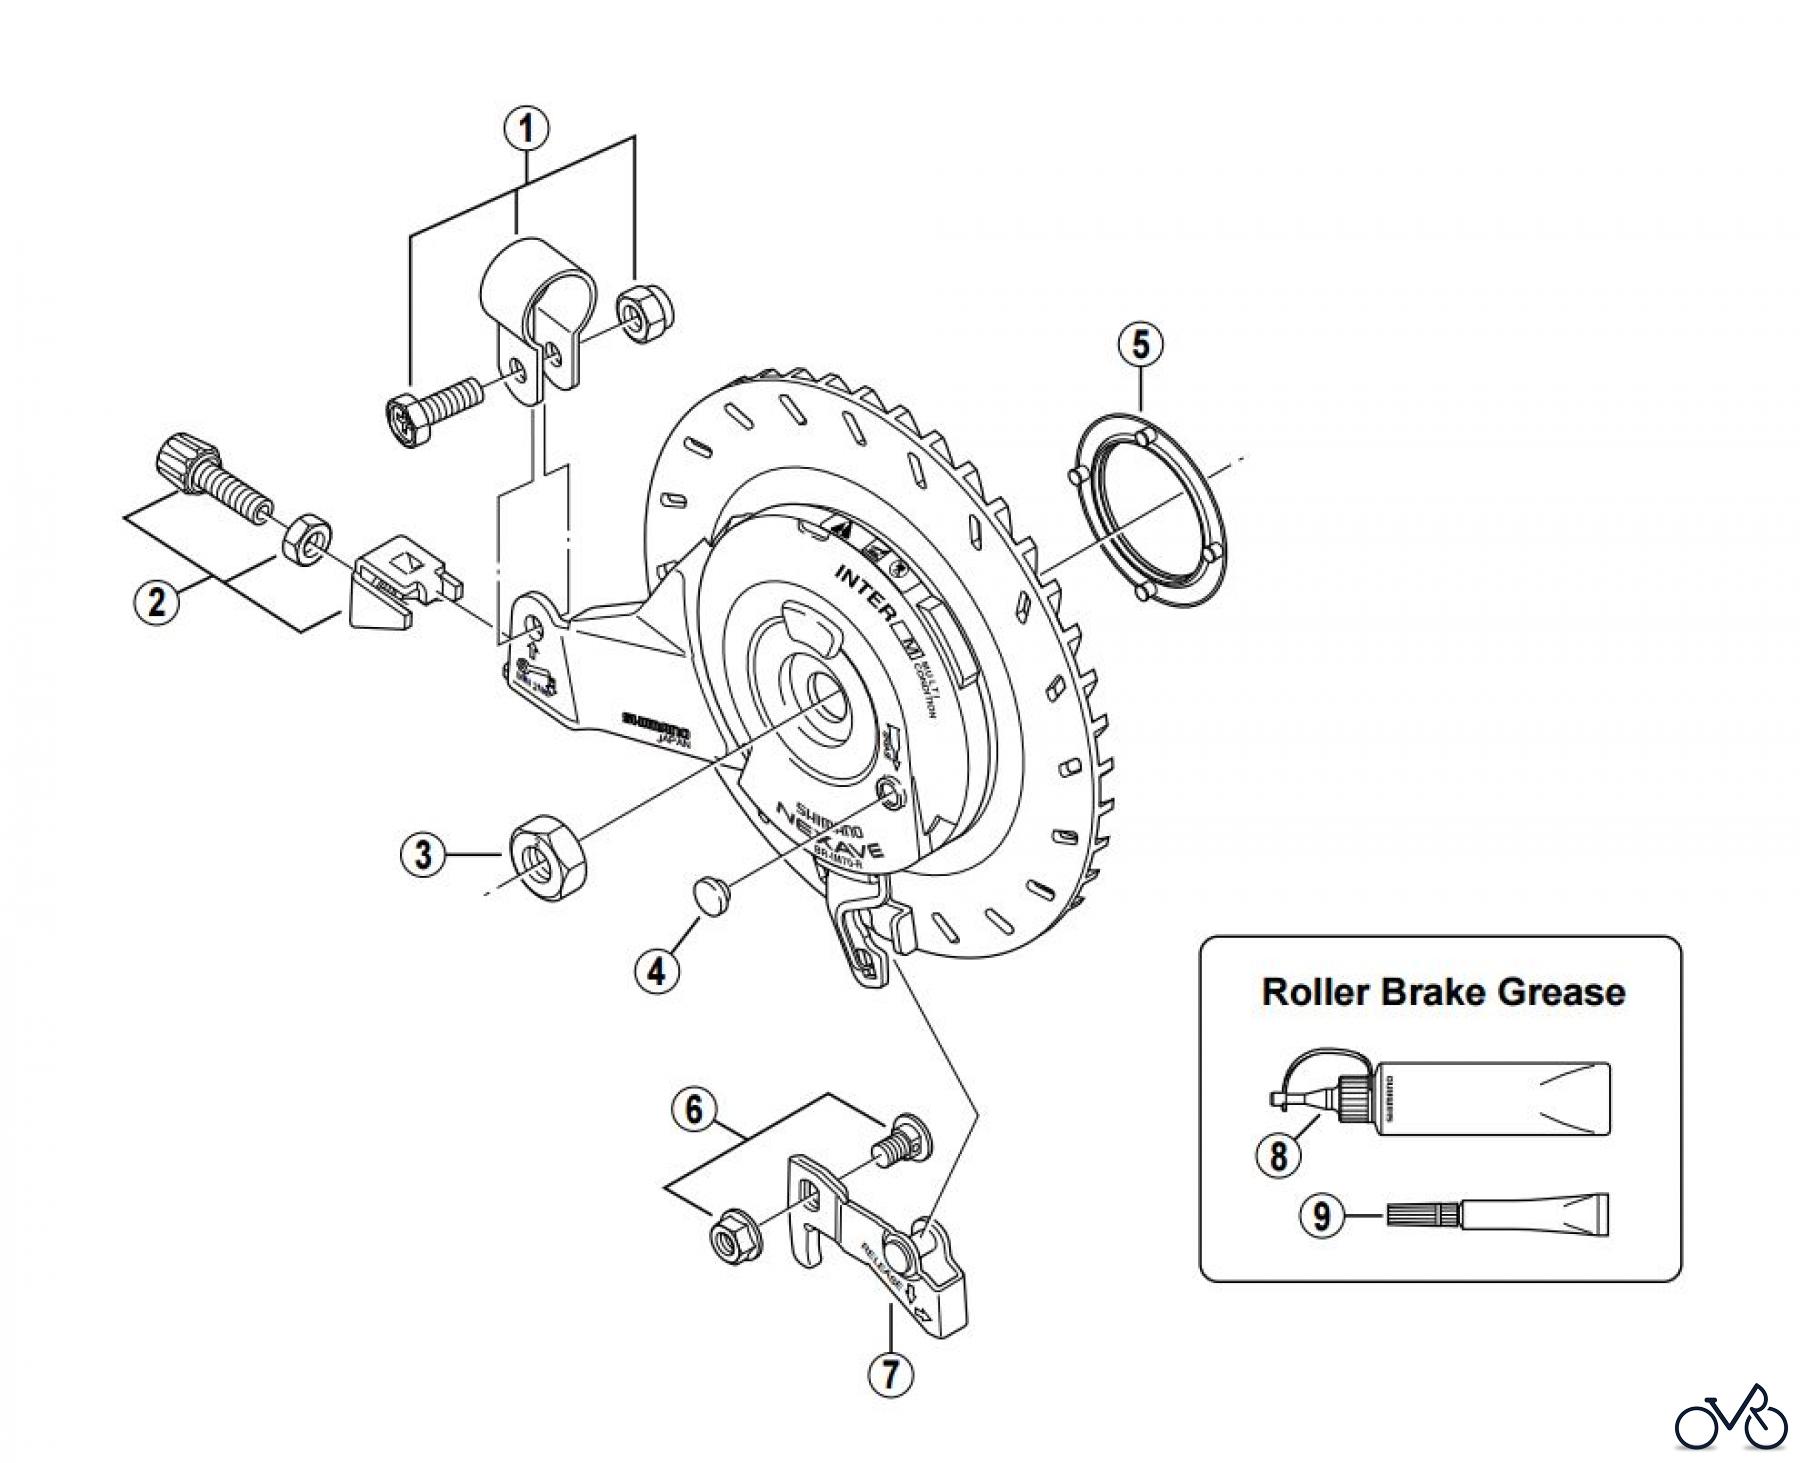  Shimano BR Brake - Bremse BR-IM70-R -2838 Roller Brake